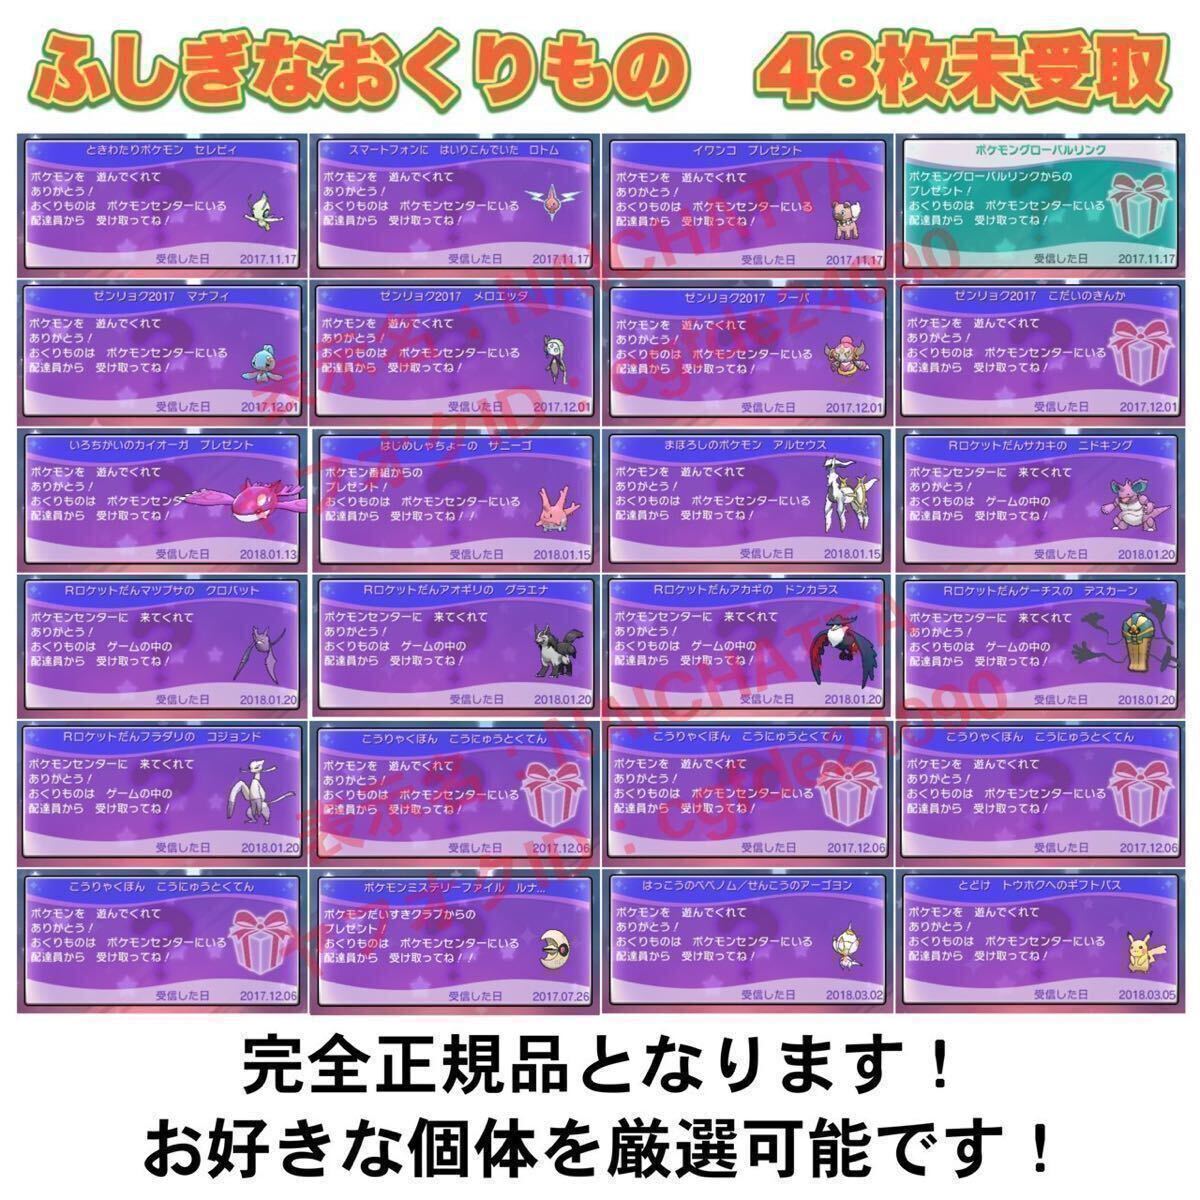 ★ポケットモンスター ウルトラサン★ポケモン 中古ソフト 3DS